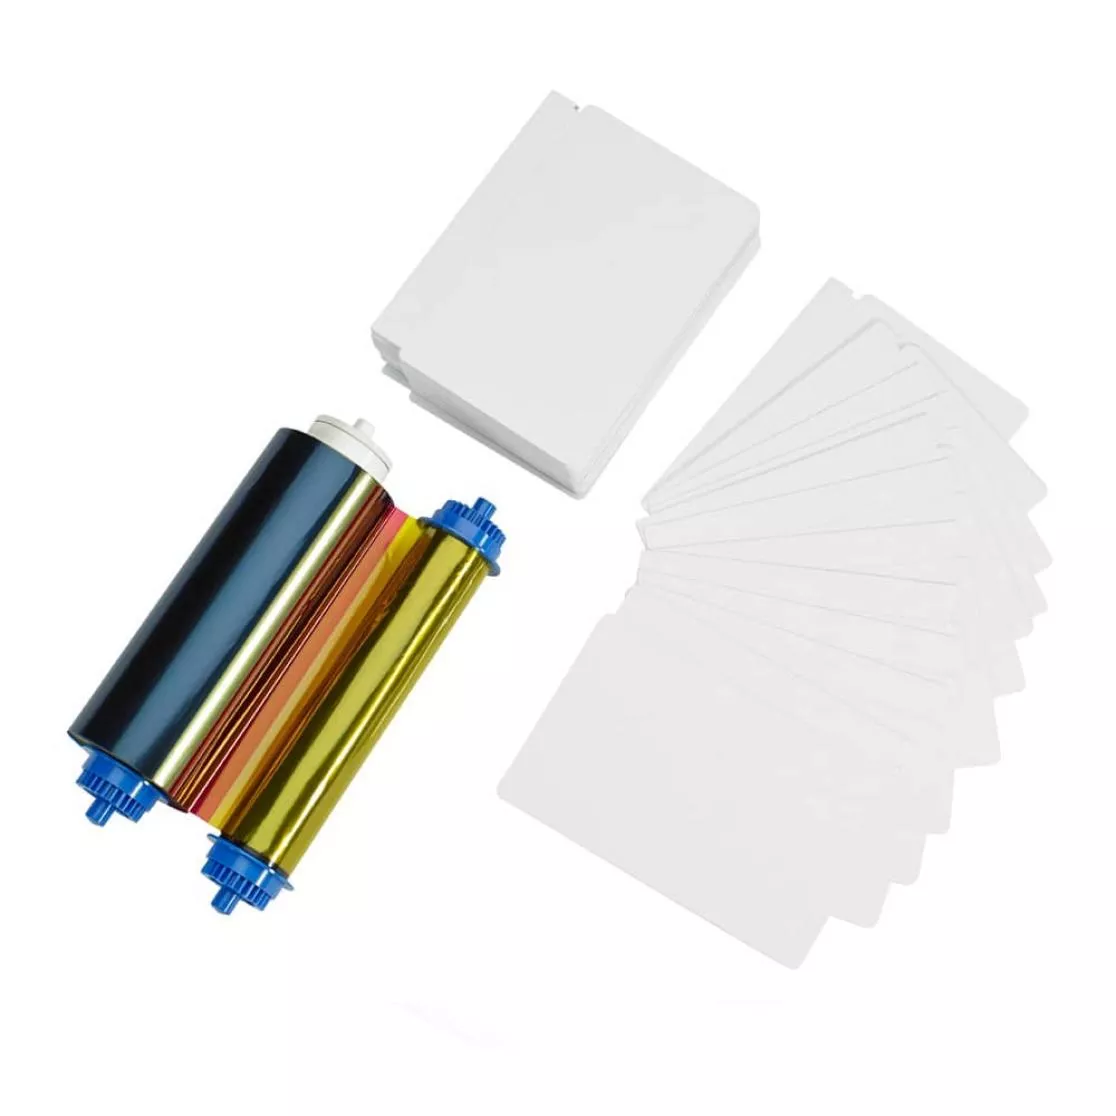 Farbband und Plastikkarten für Kartendrucker Zebra ZC10L